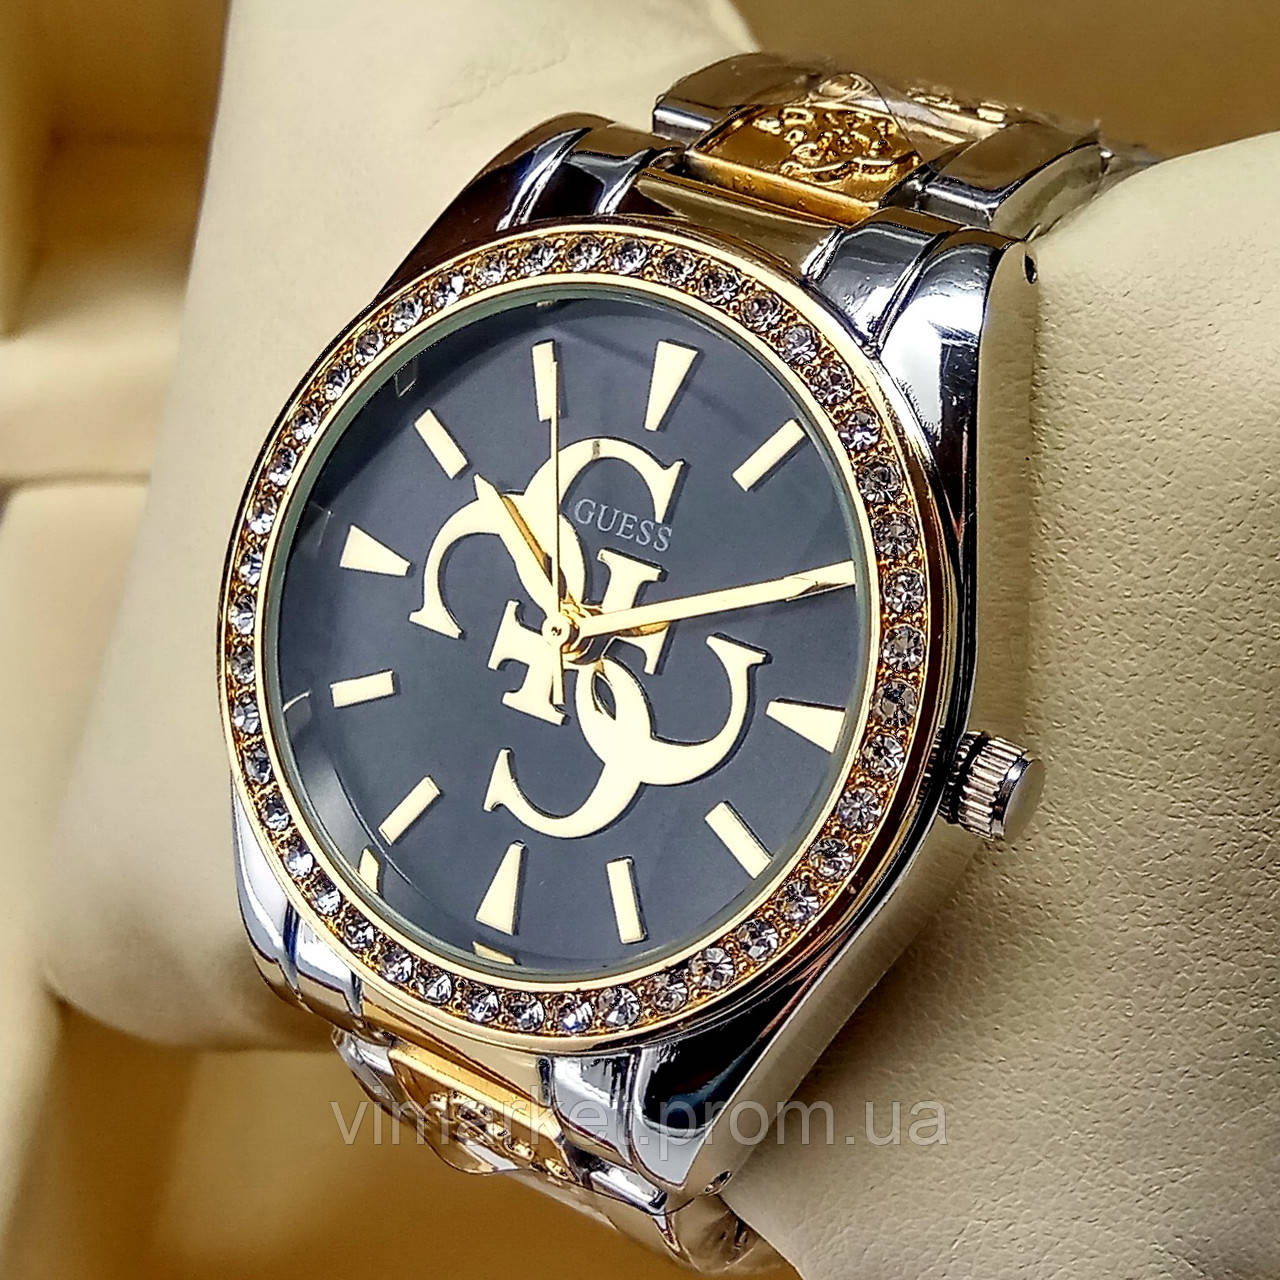 Жіночі наручні годинники Guess на металевому браслеті об'єднані золото срібло, чорний циферблат